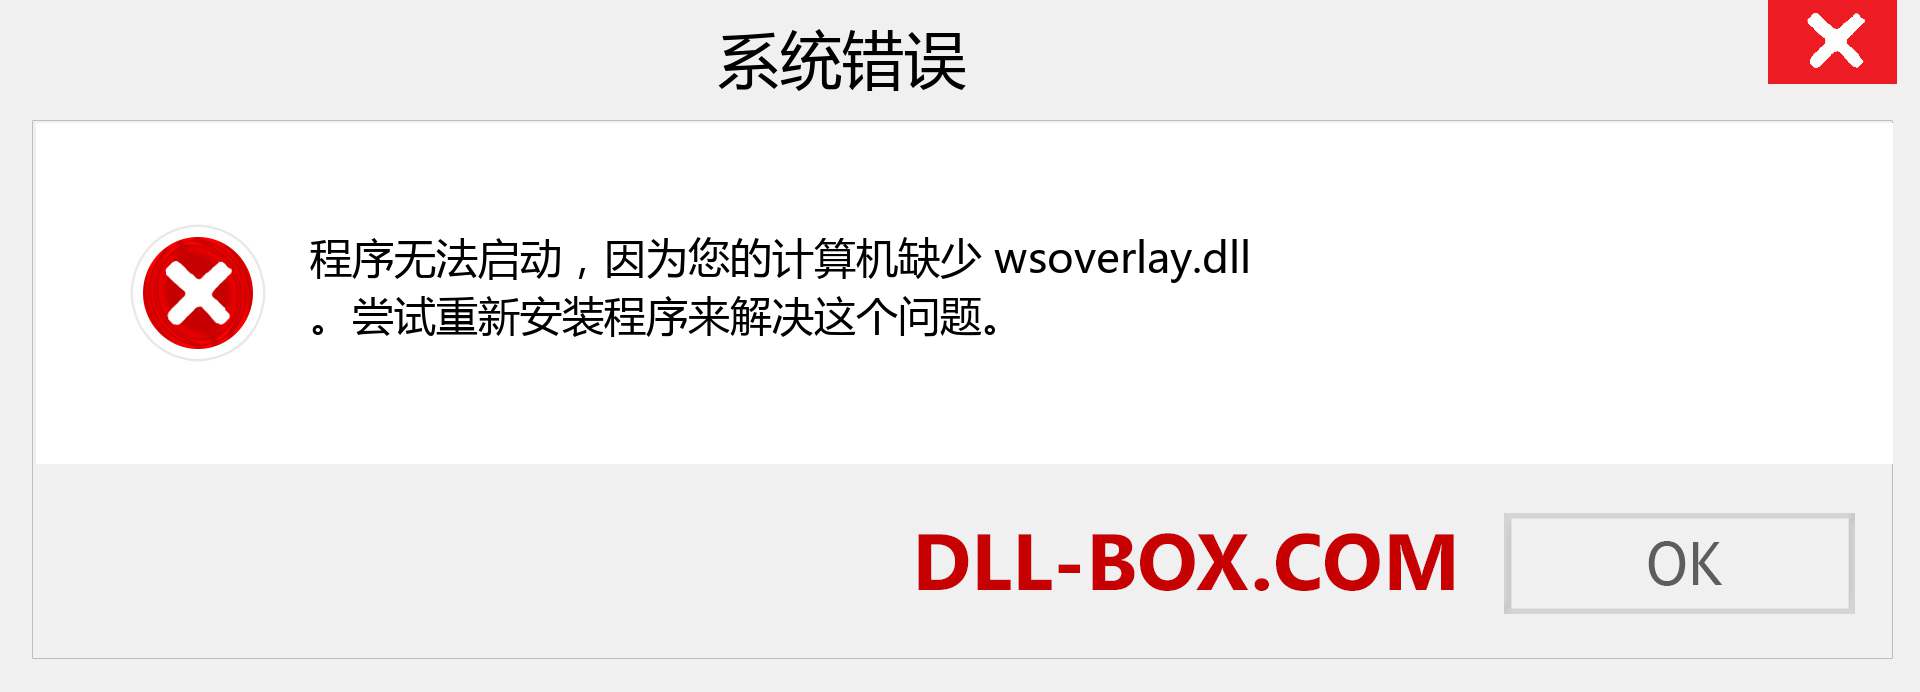 wsoverlay.dll 文件丢失？。 适用于 Windows 7、8、10 的下载 - 修复 Windows、照片、图像上的 wsoverlay dll 丢失错误